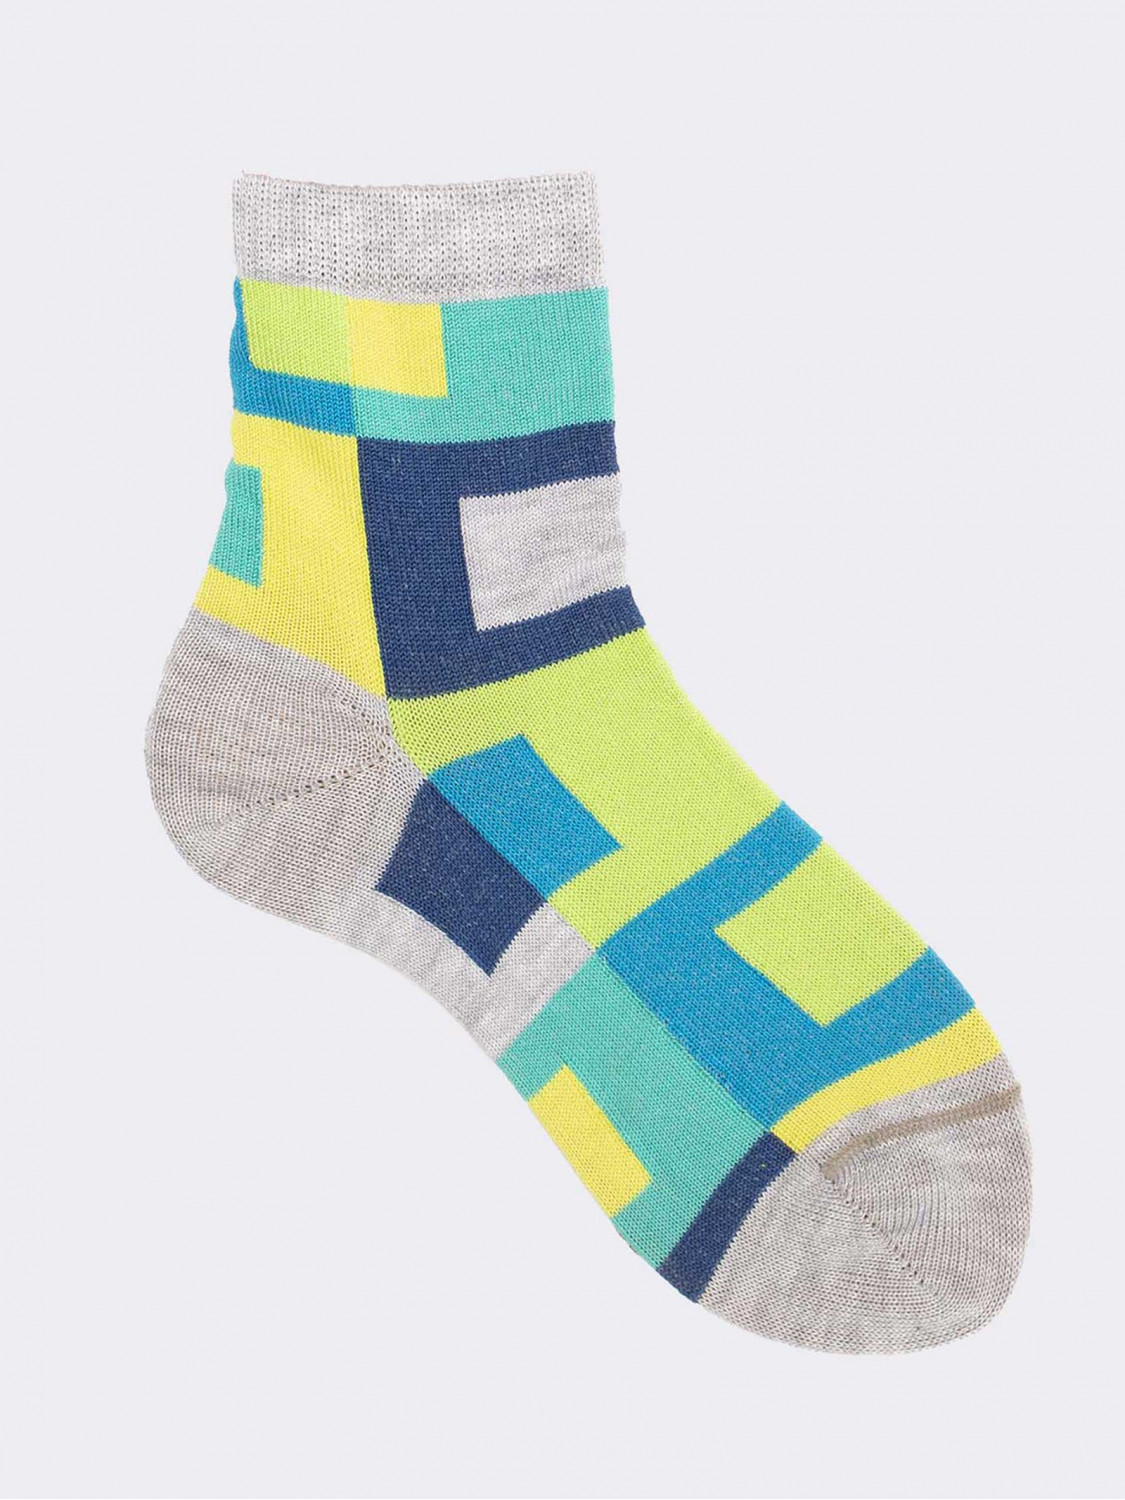 Geometrisch gemusterte kurze Socken für Jungen aus frischer Baumwolle